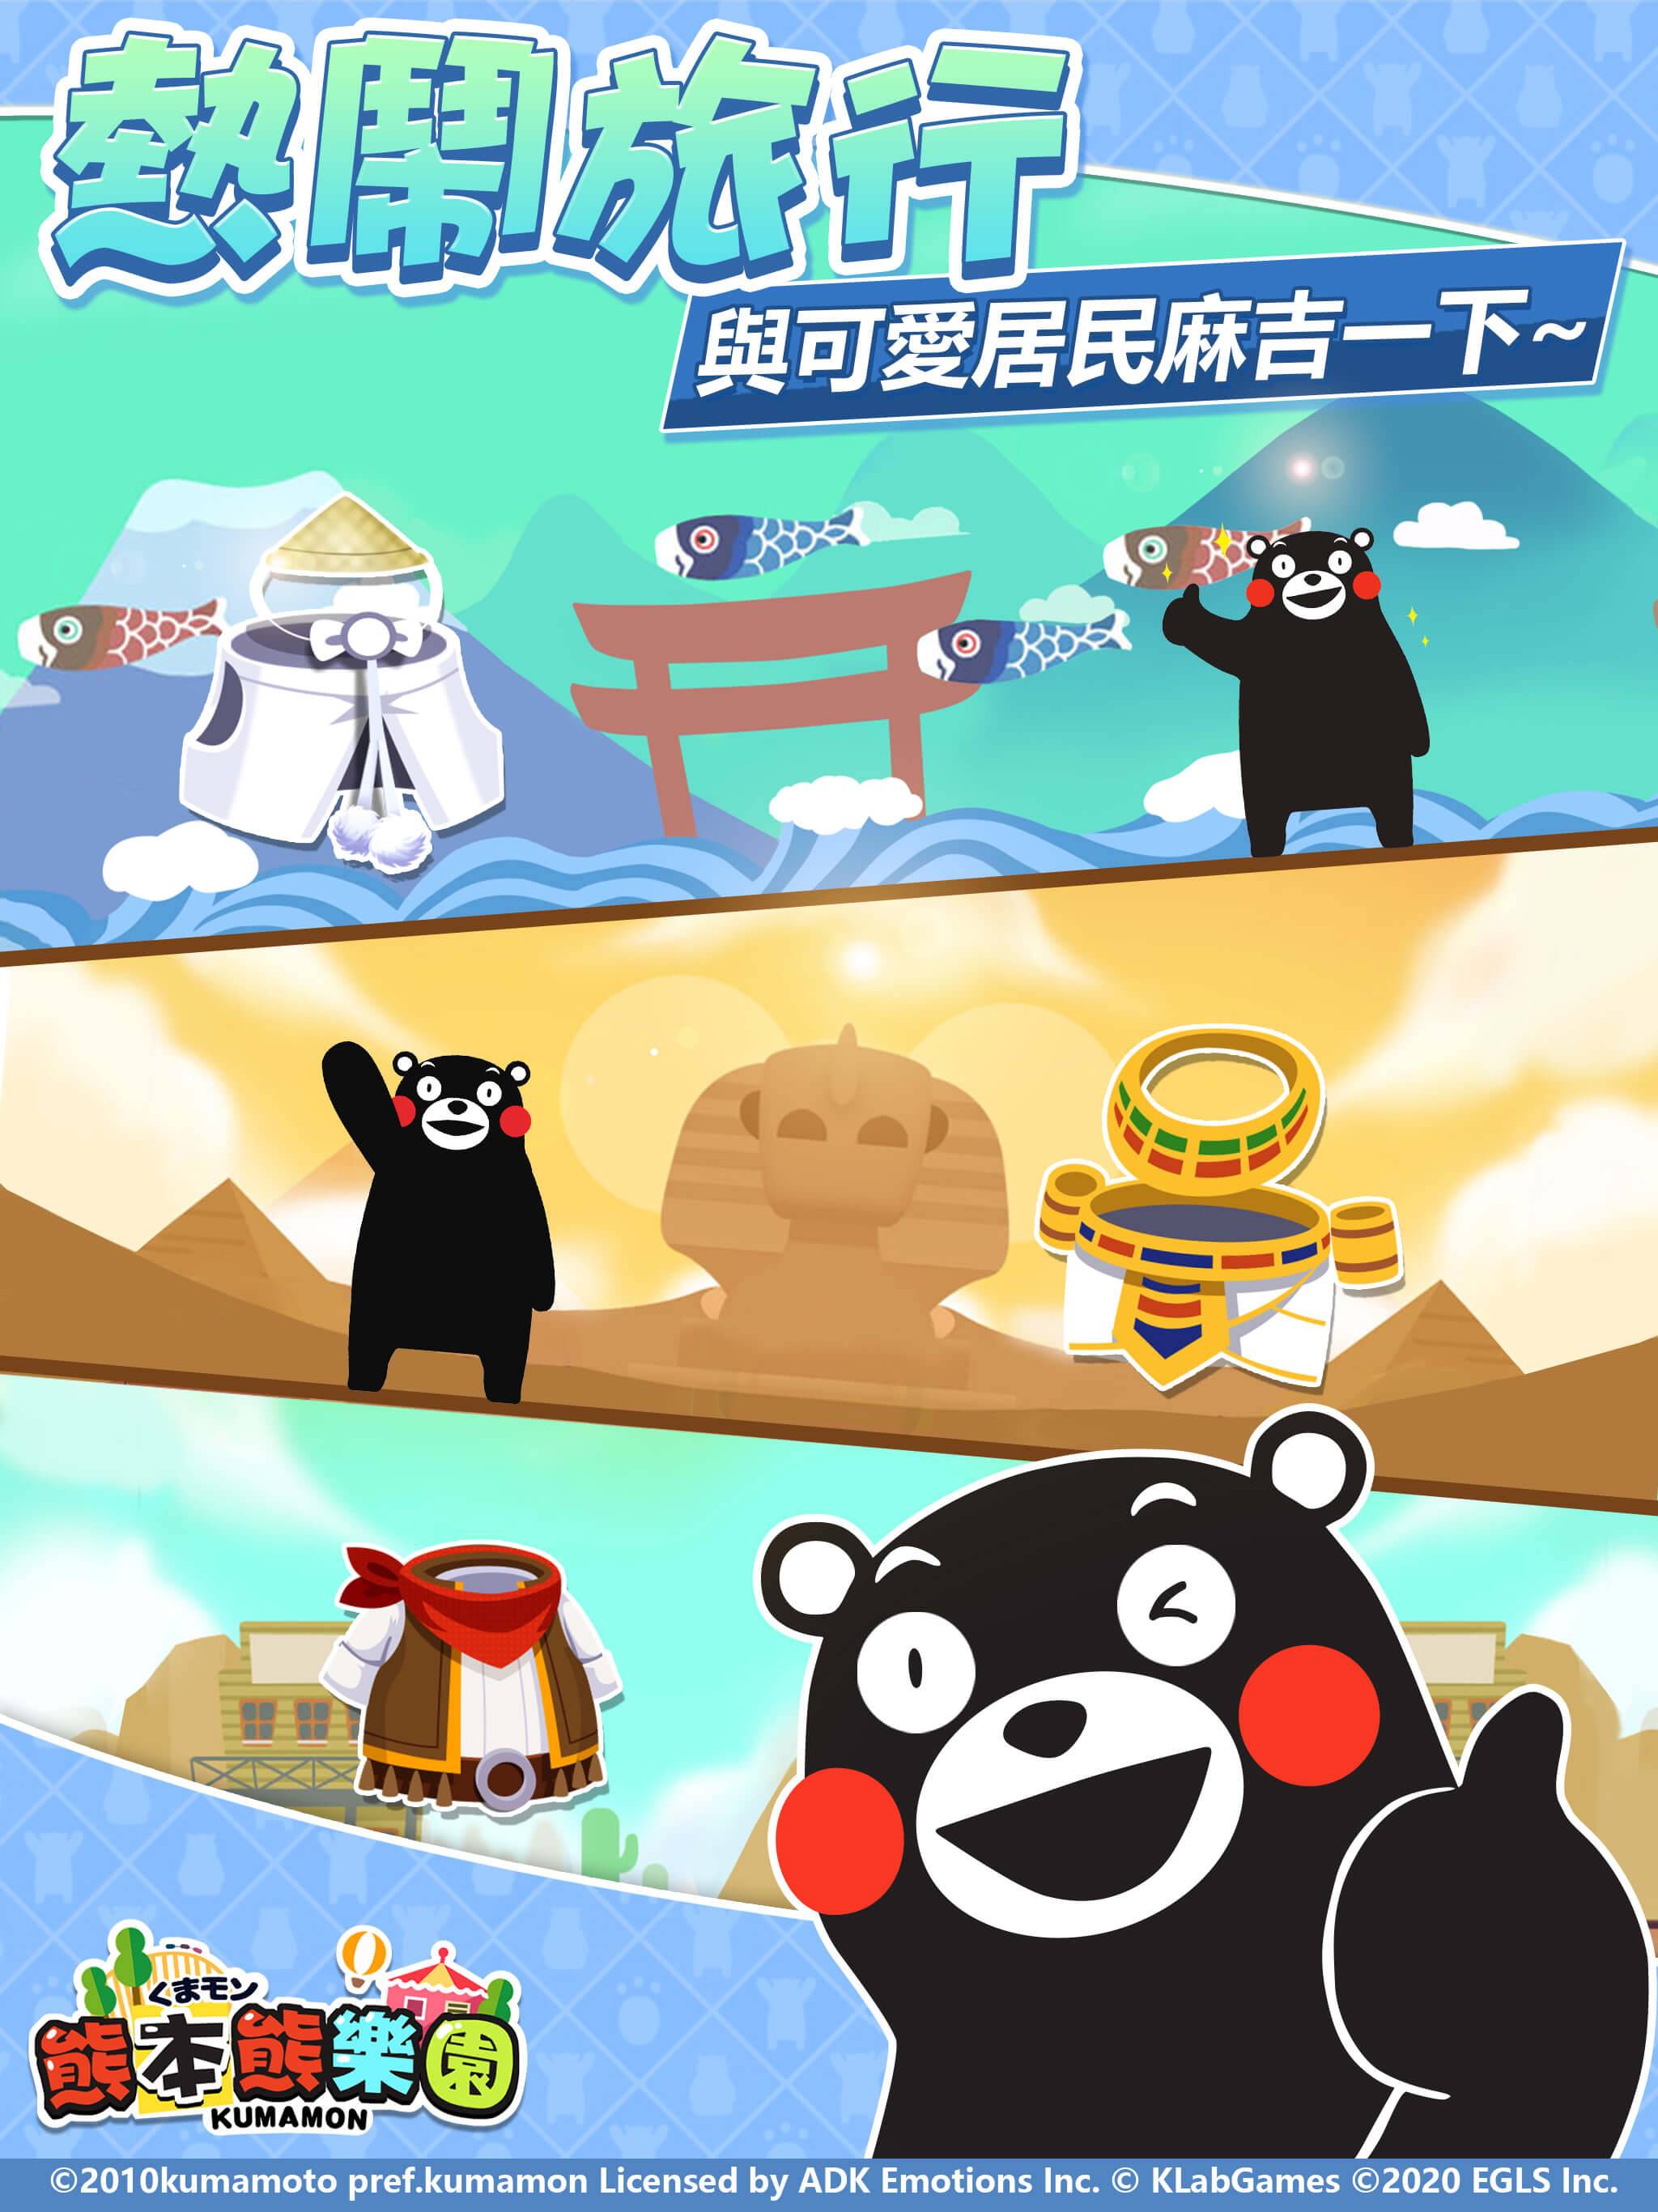 熊本熊Kumamon正版授權-三消經營手遊《熊本熊樂園》台灣代理確認